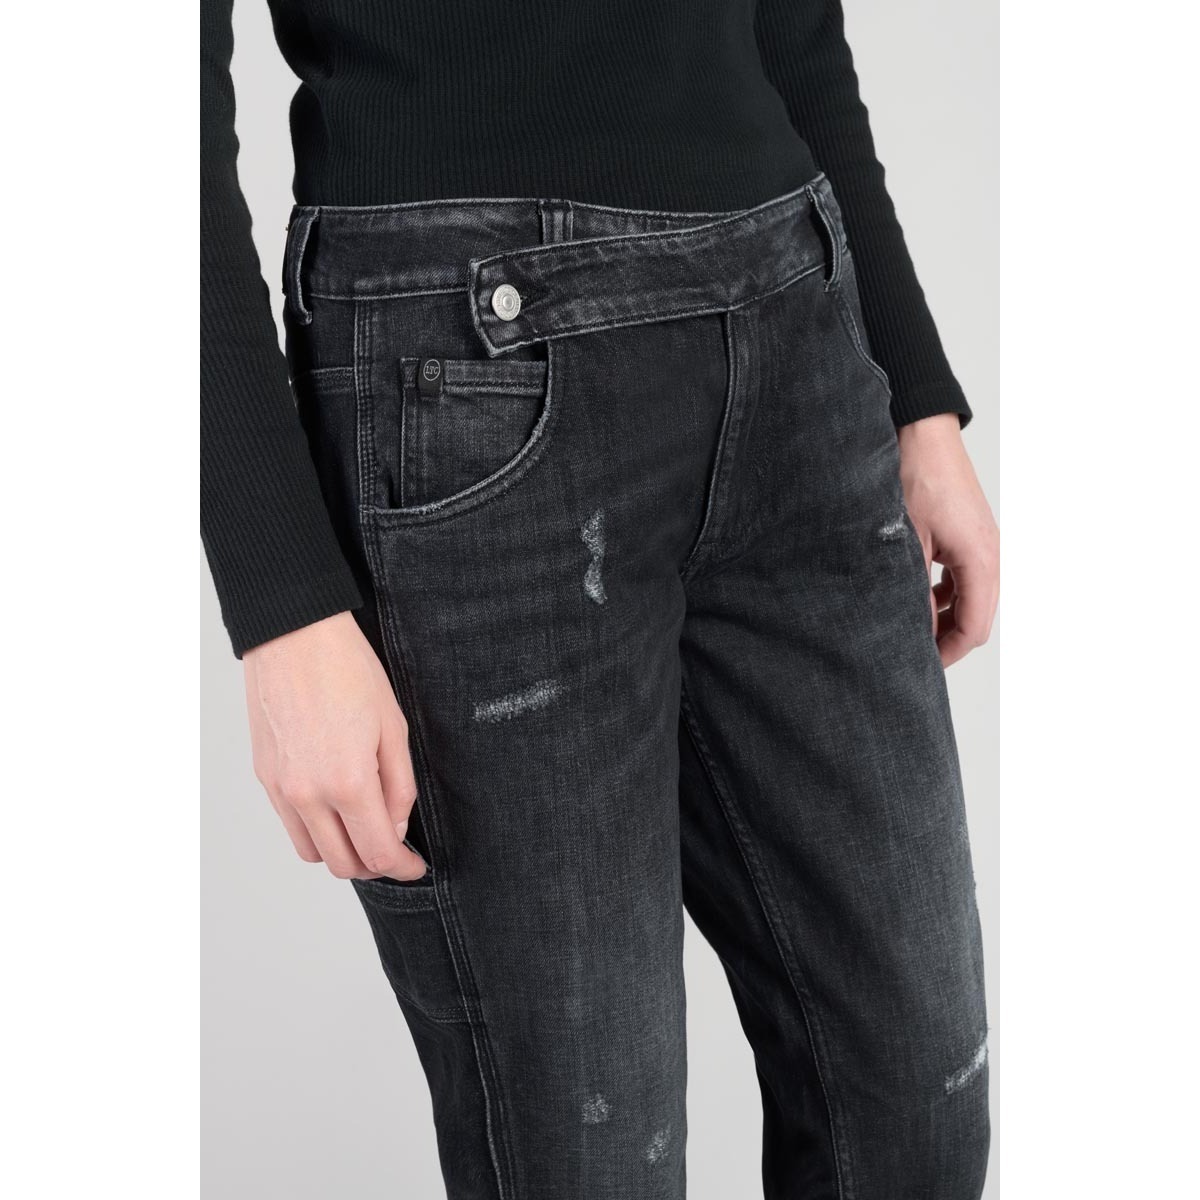 Le Temps des Cerises Noir Chara 200/43 boyfit jeans destroy noir Hdkp6VEa